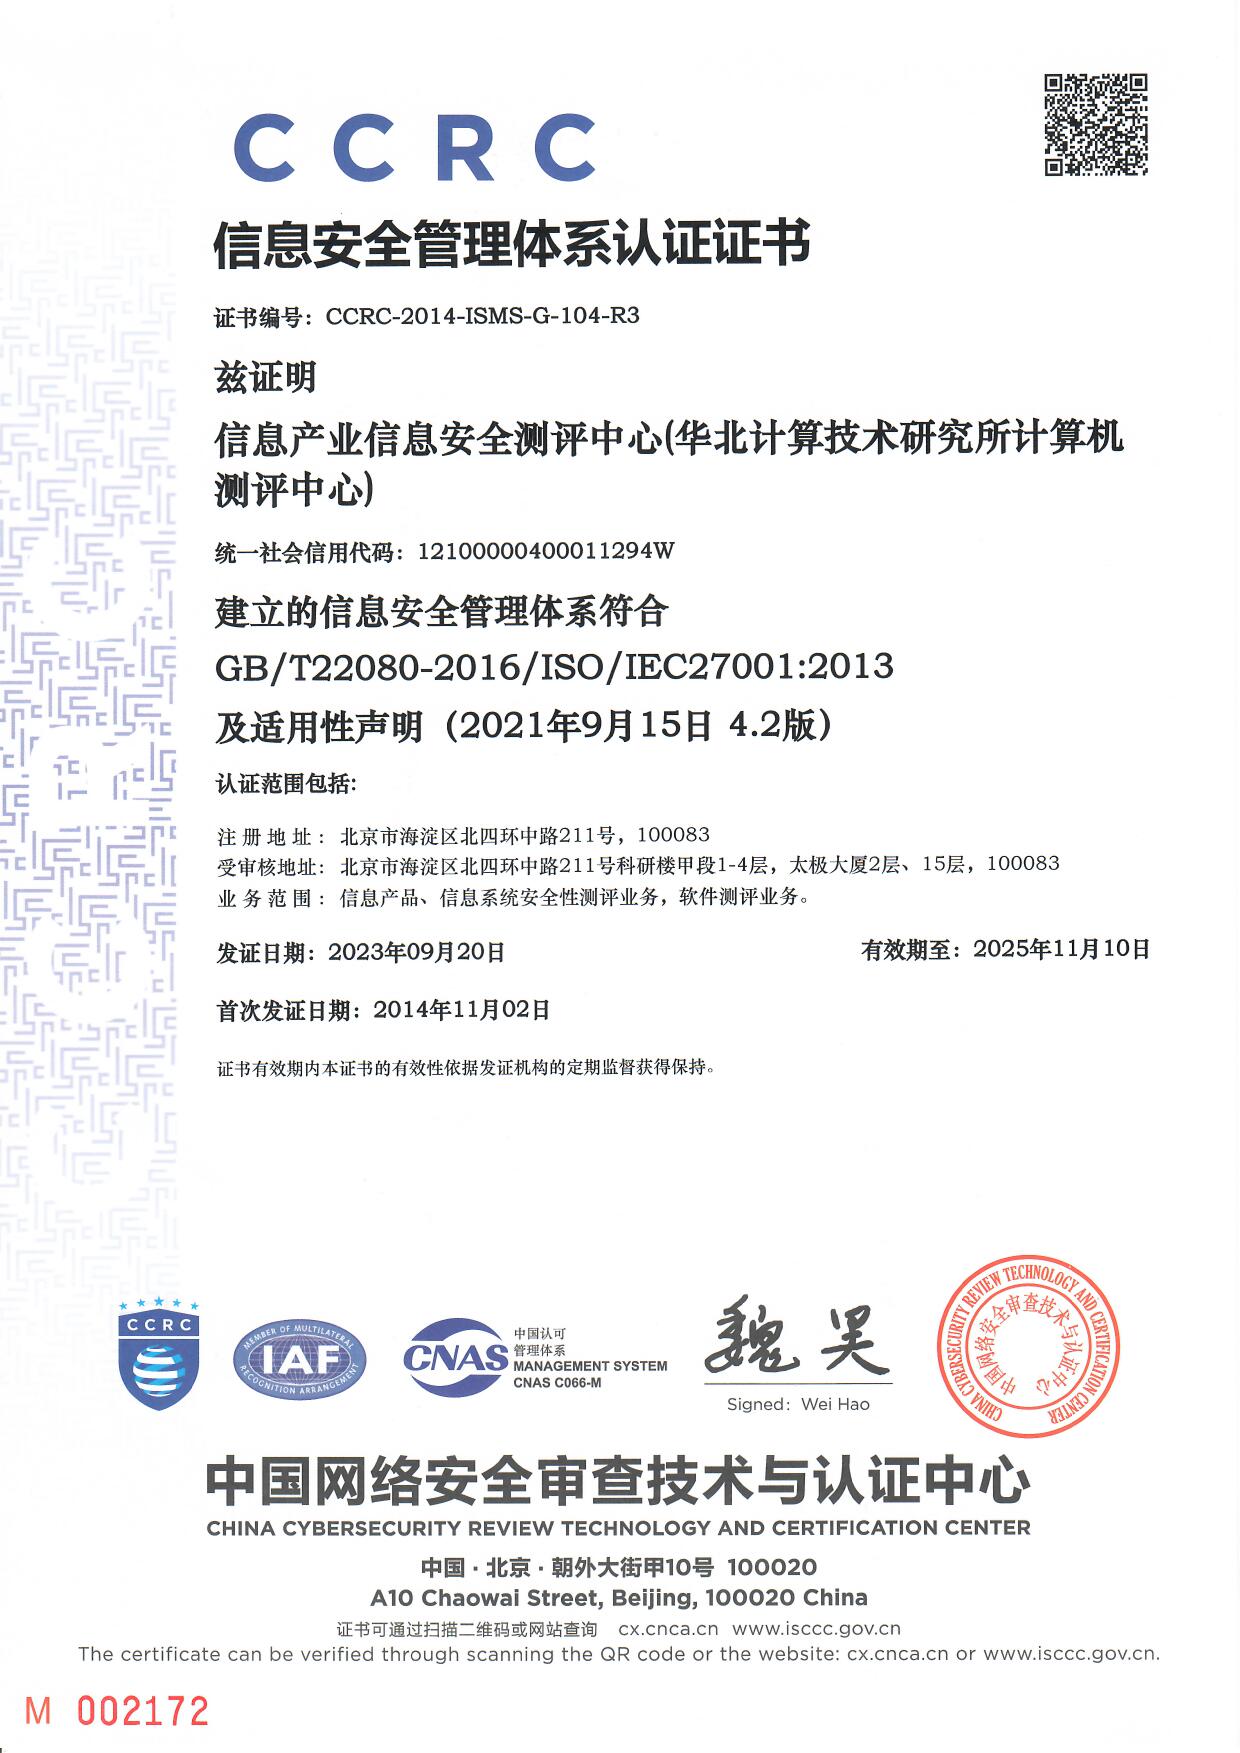 信息安全管理体系认证证书(中文)(No.CCRC-2014-ISMS-G-104-R3)